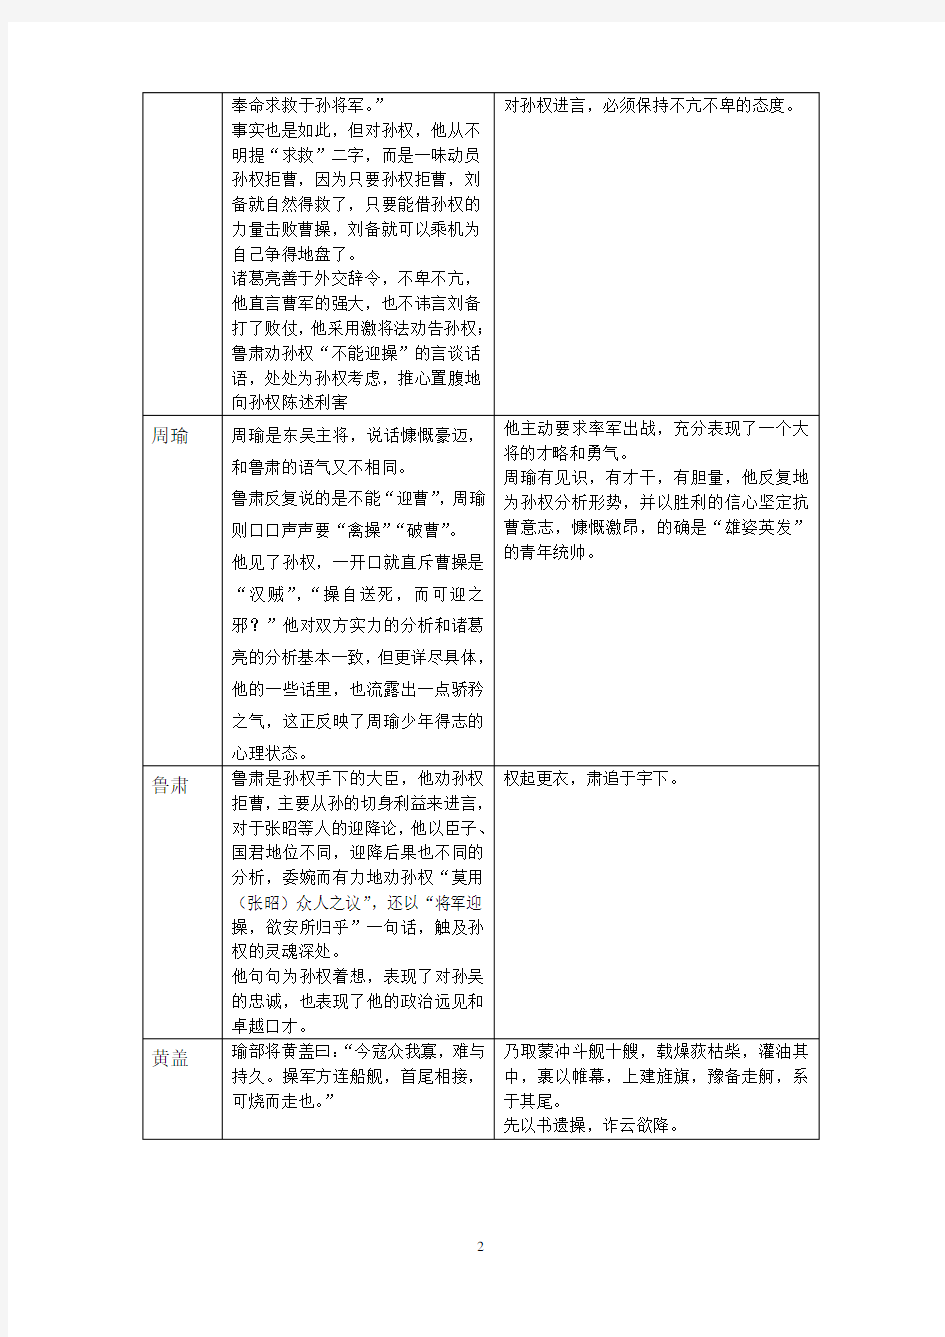 大学语文答案( 南京大学网络教育学院期末考试试卷)2013-06-23